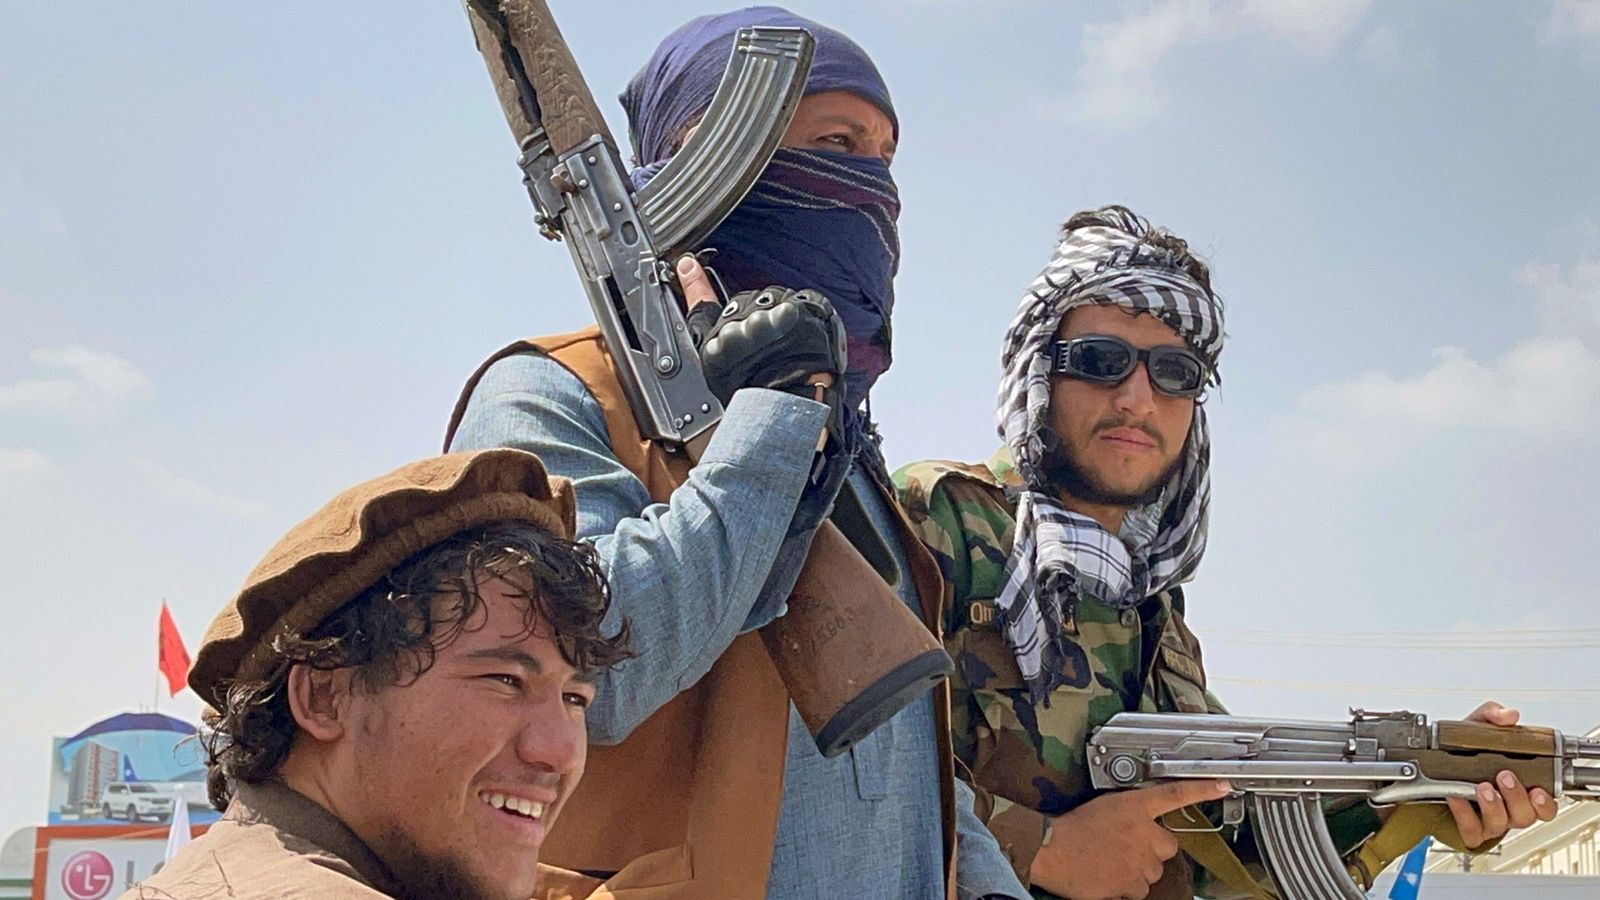 "अगर हम आपको देखते हैं, तो हम आपका सिर काट देंगे", तालिबान ने अफगानिस्तान में ईसाइयों को धमकी दी